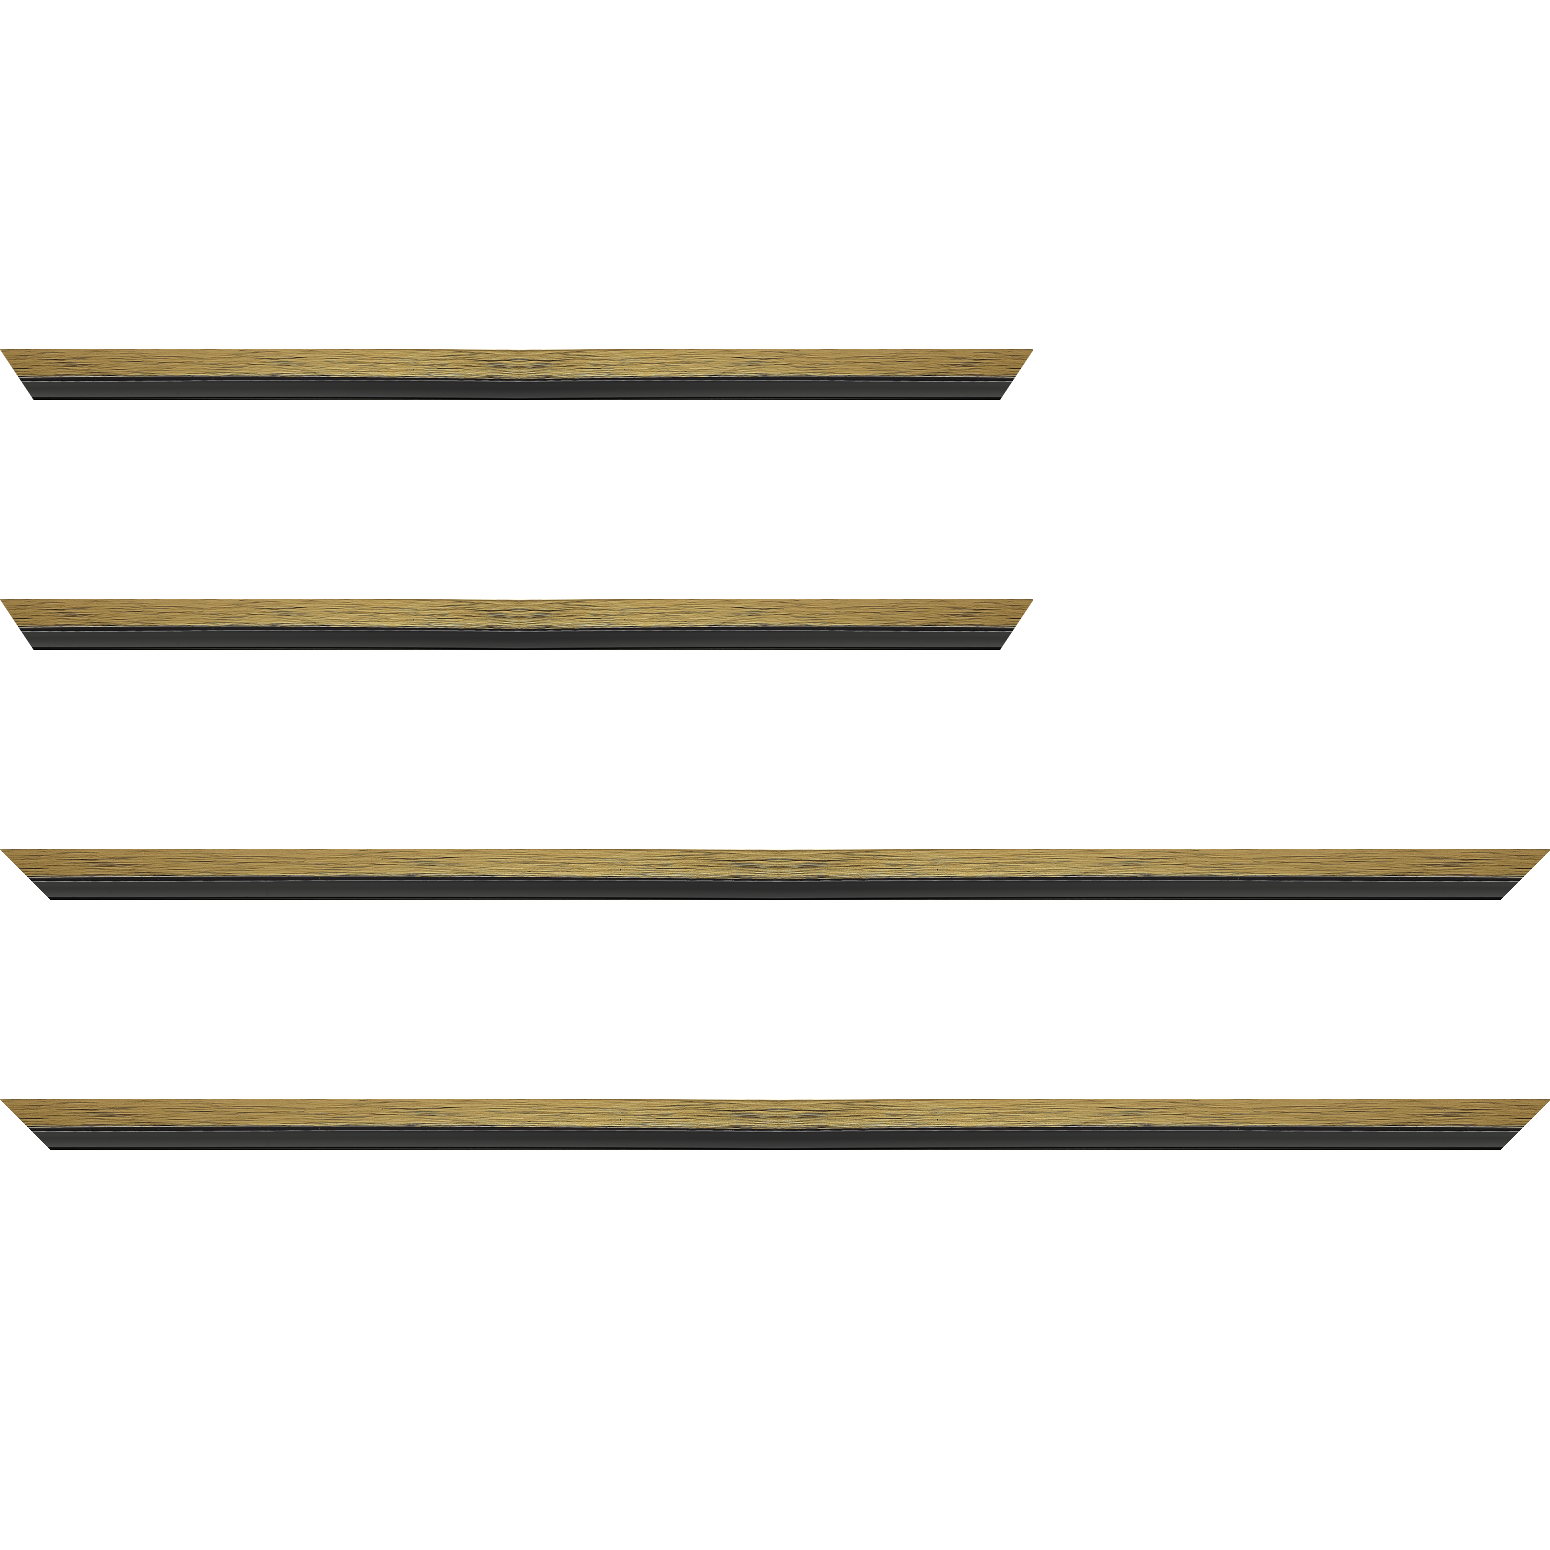 Baguette bois profil plat largeur 1.6cm couleur or contemporain filet noir en retrait de la face du cadre de 6mm assurant un effet très original